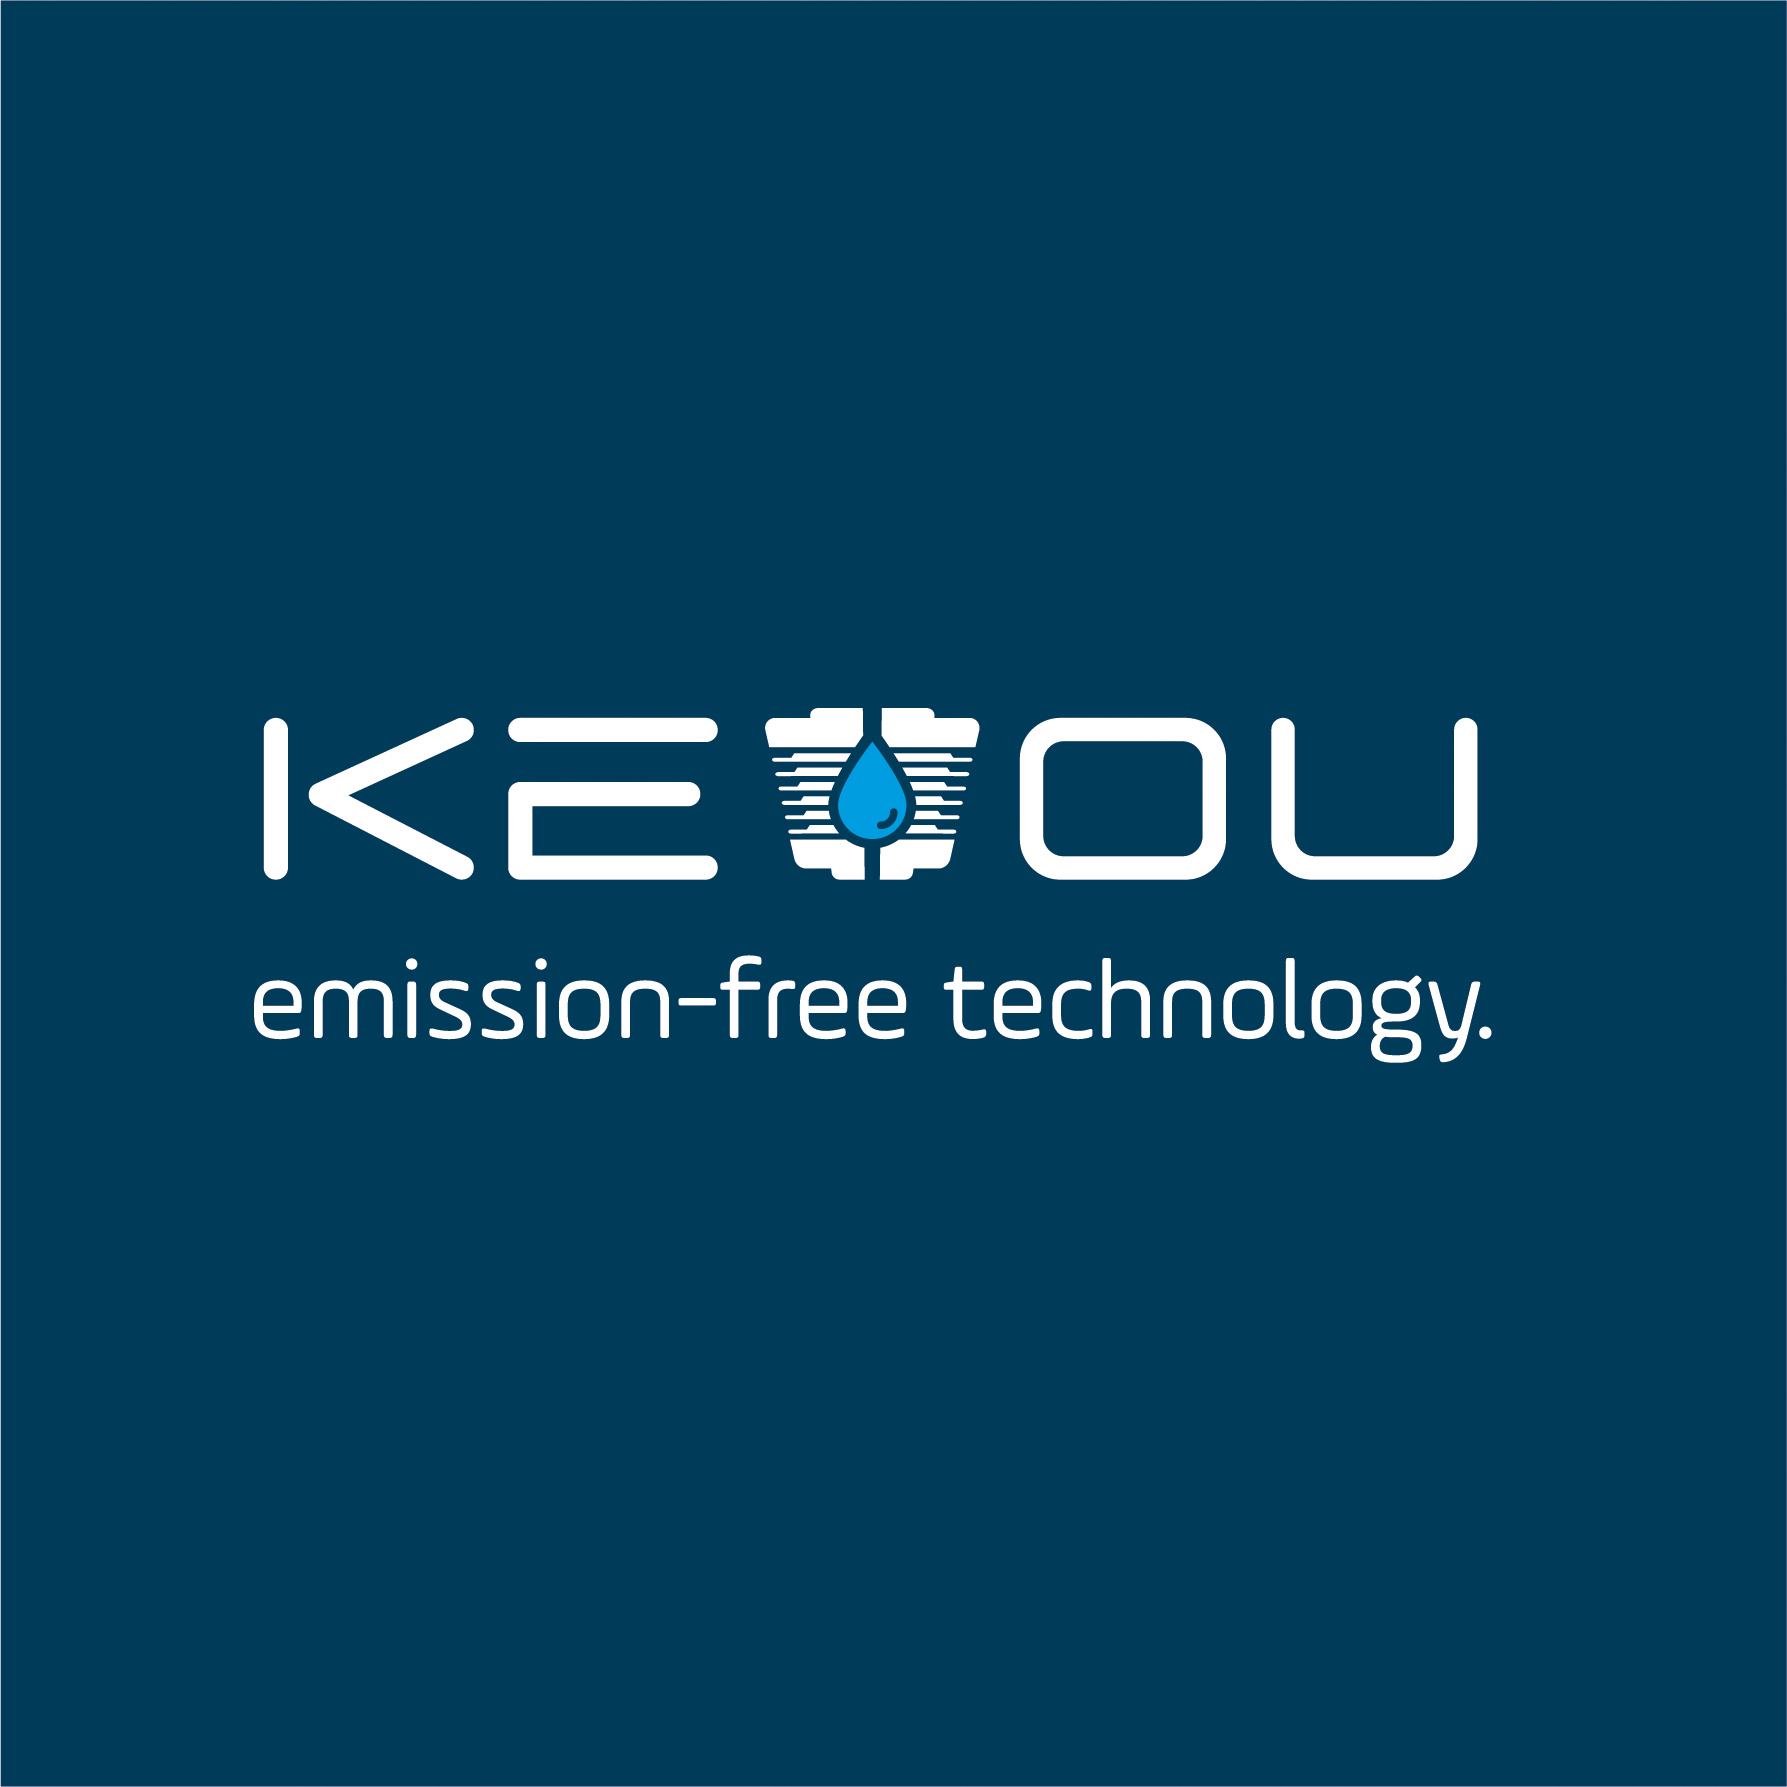 KEYOU GmbH